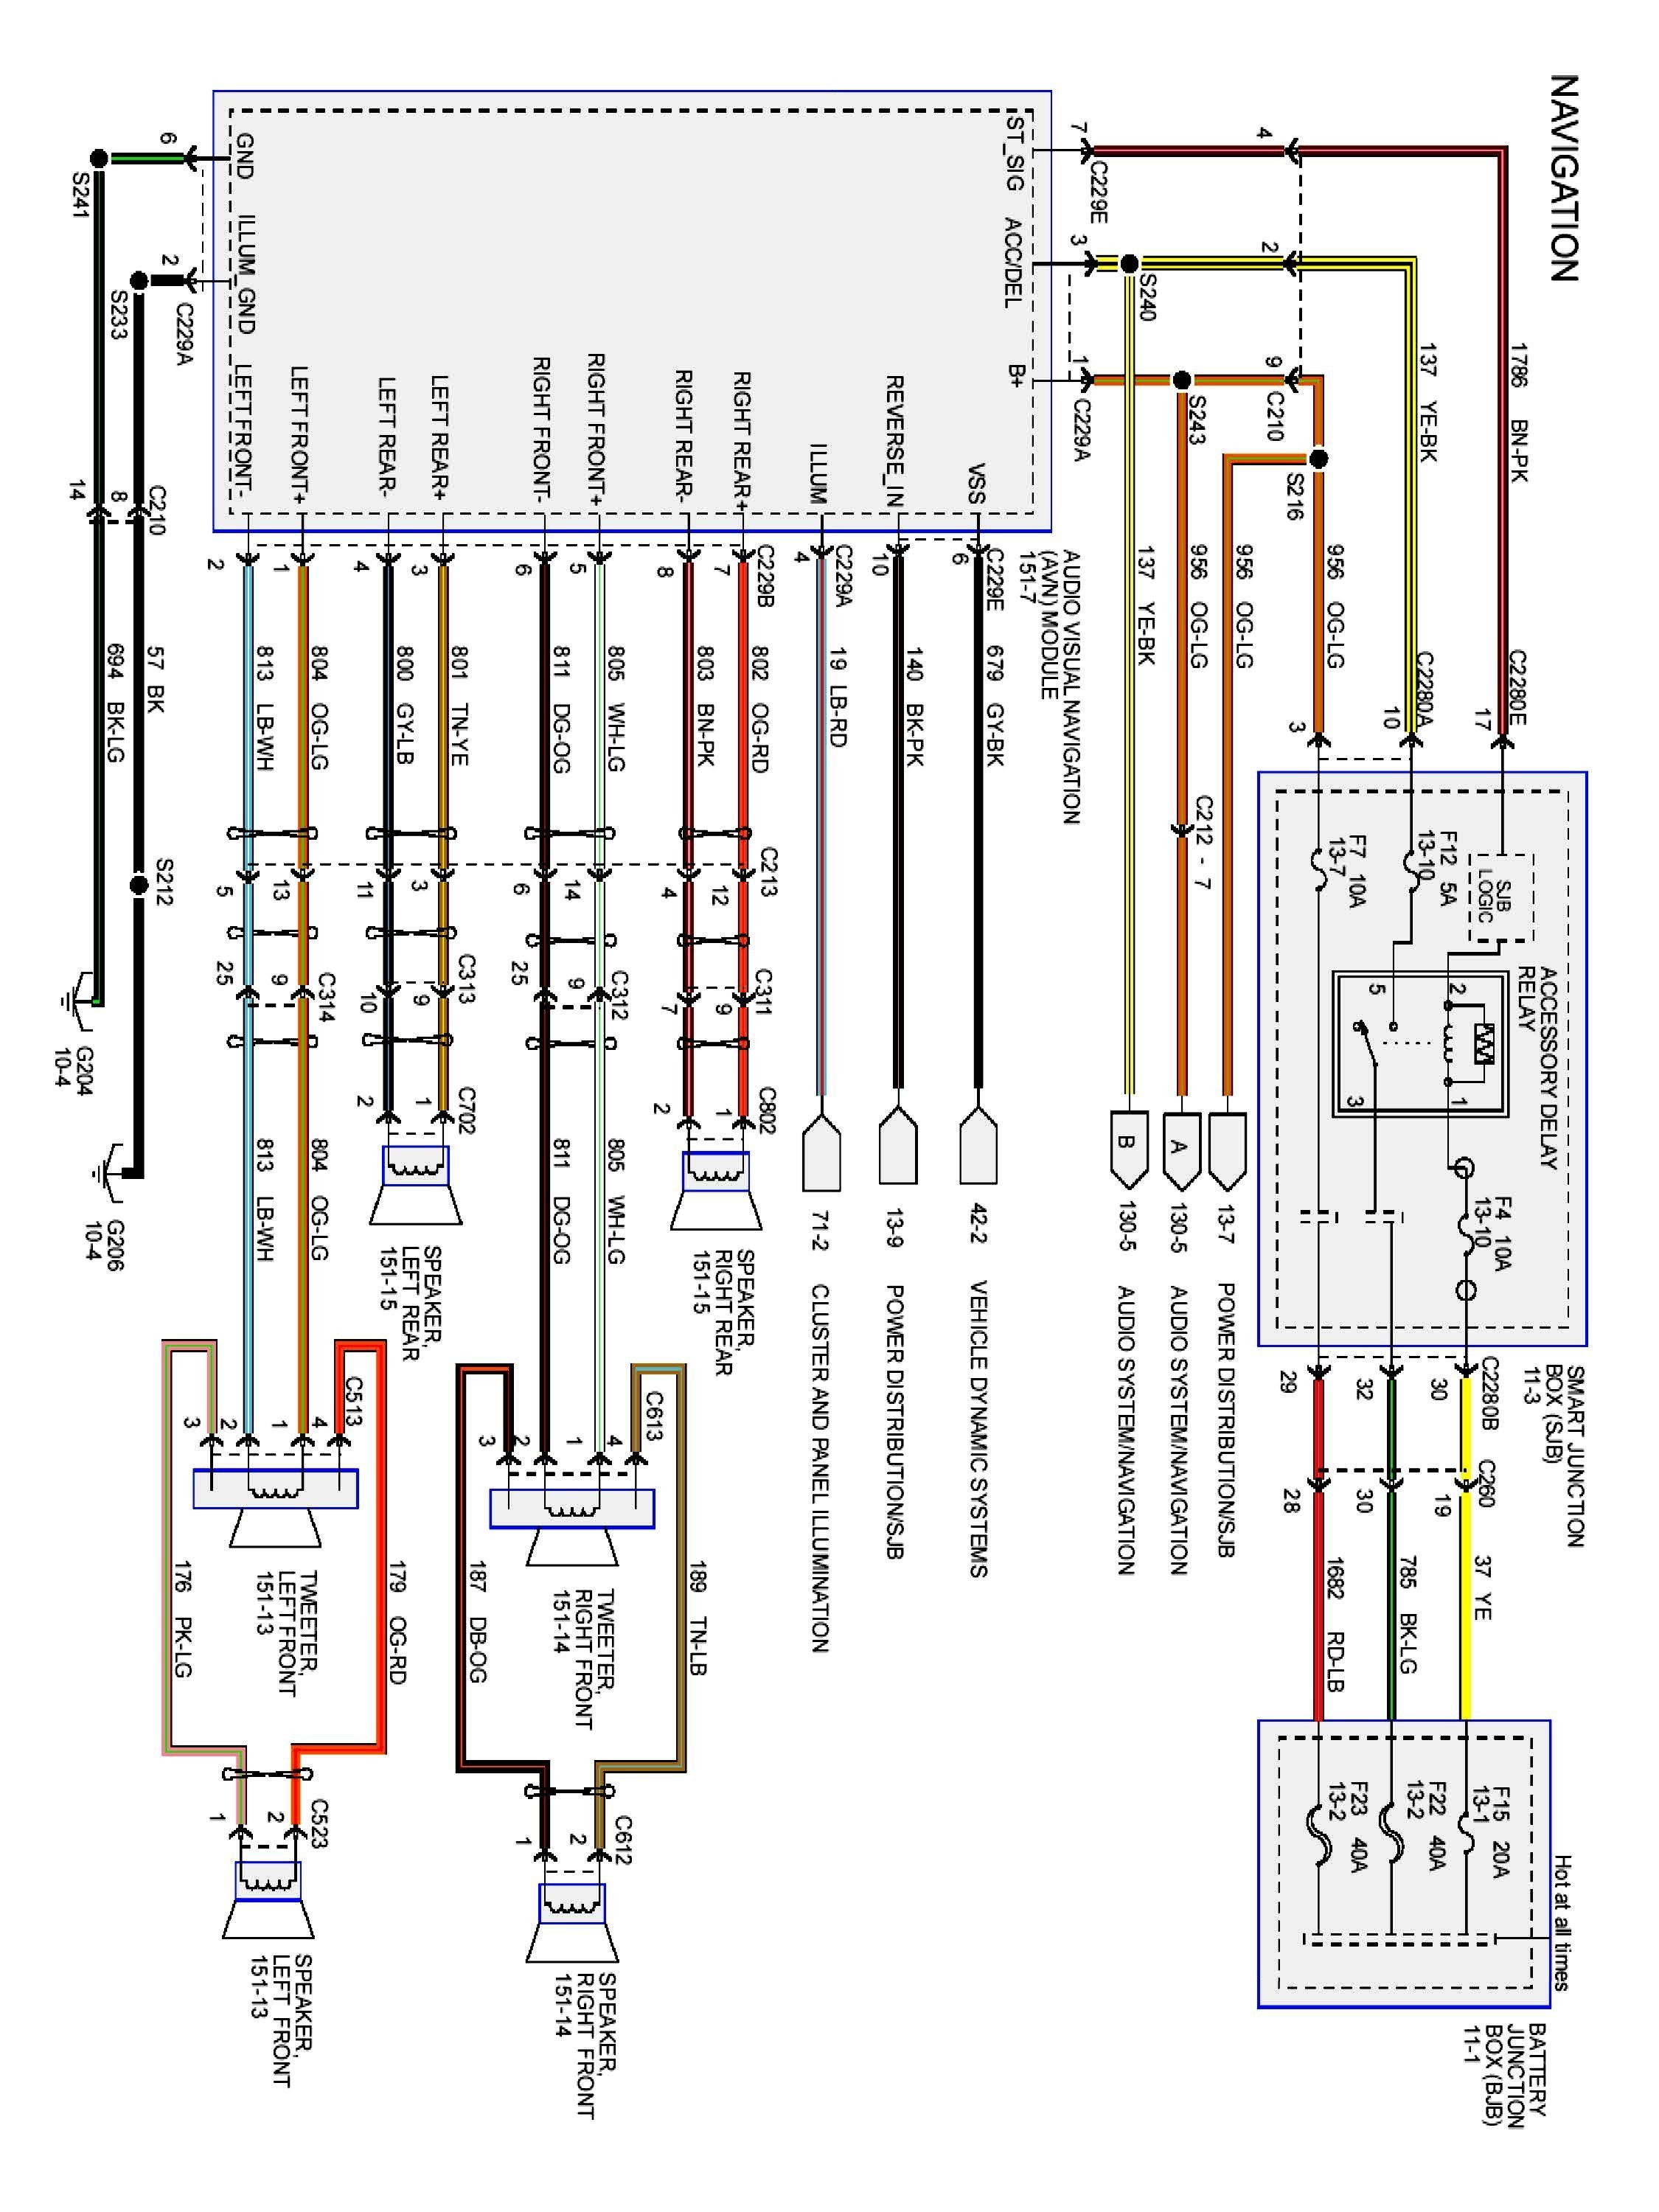 1998 Hyundai Elantra Radio Wiring Diagram from detoxicrecenze.com